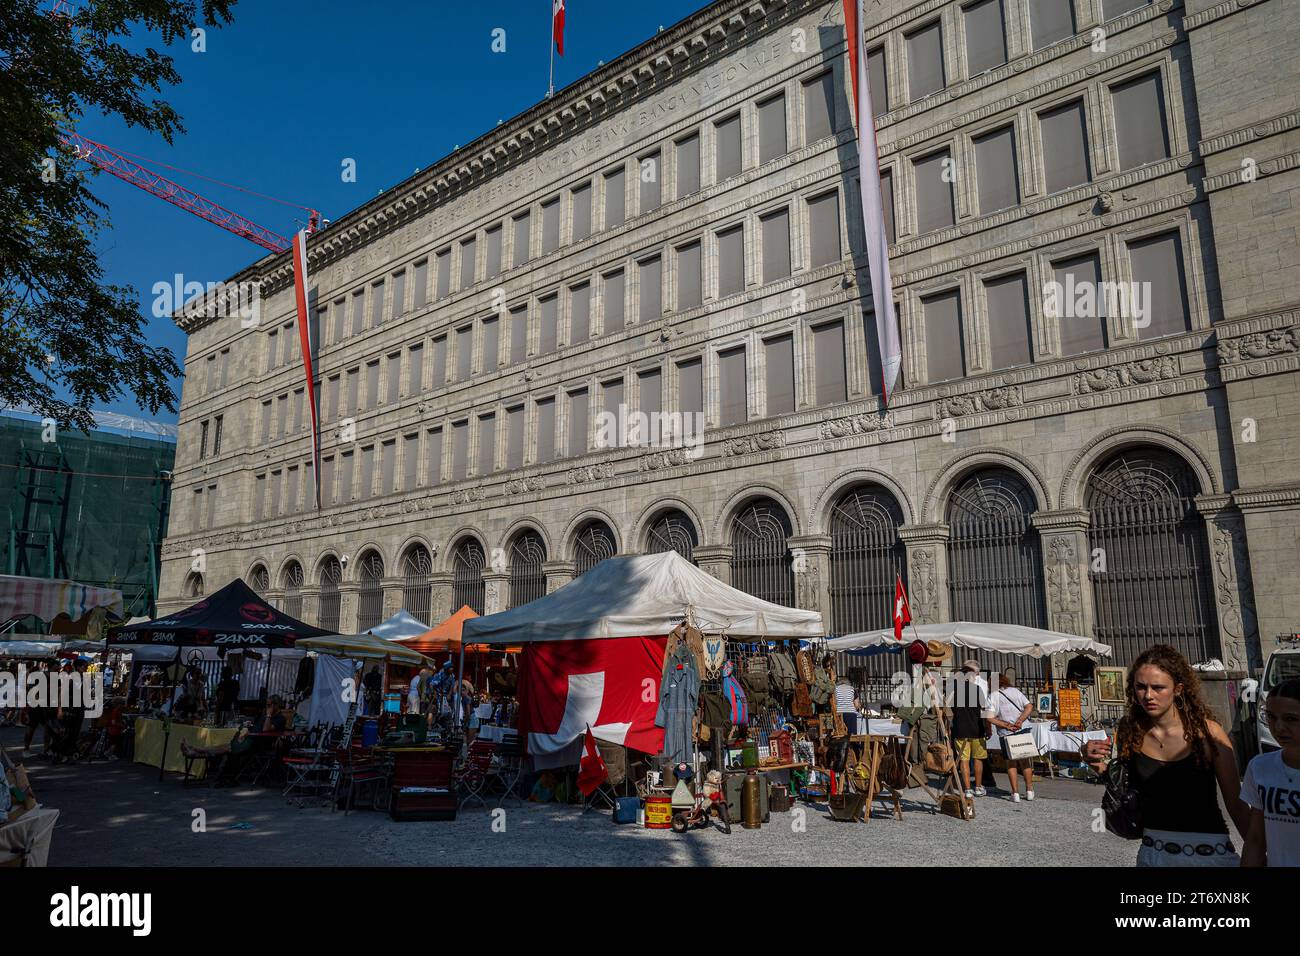 Banca nazionale svizzera a zurigo con il mercato delle pulci in primo piano Foto Stock